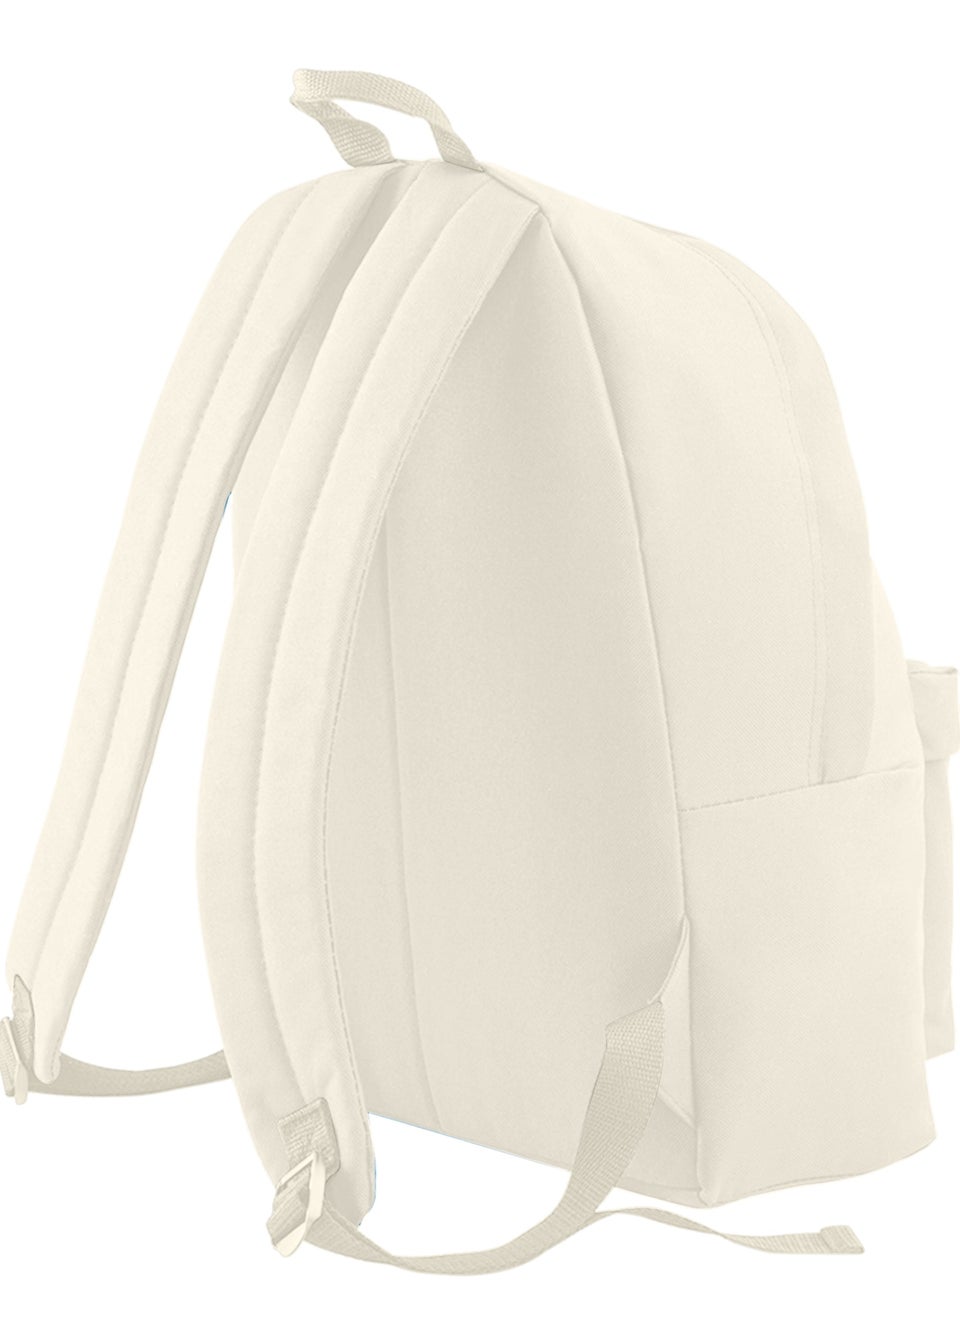 Bagbase Natural Original Plain Backpack